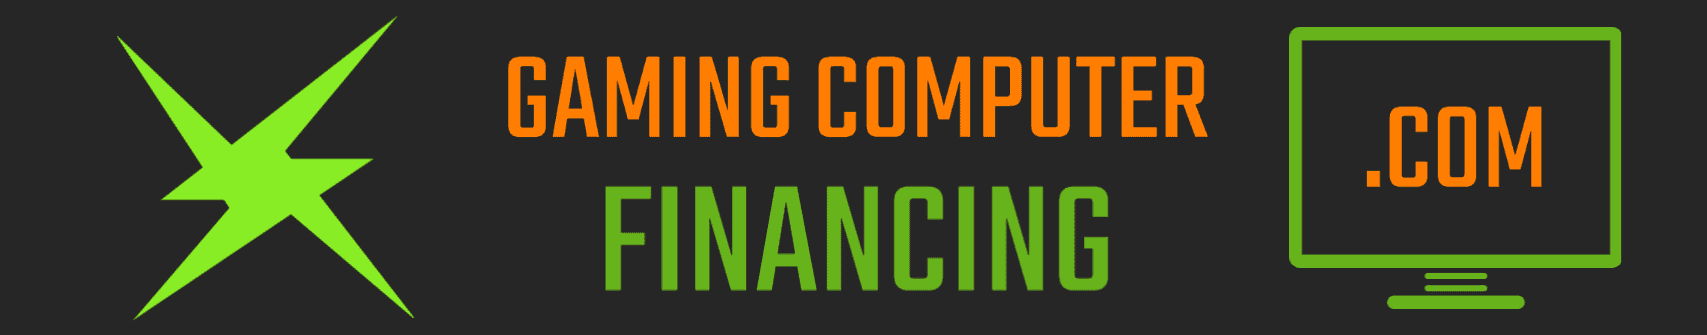 Gaming Computer Financing, LLC